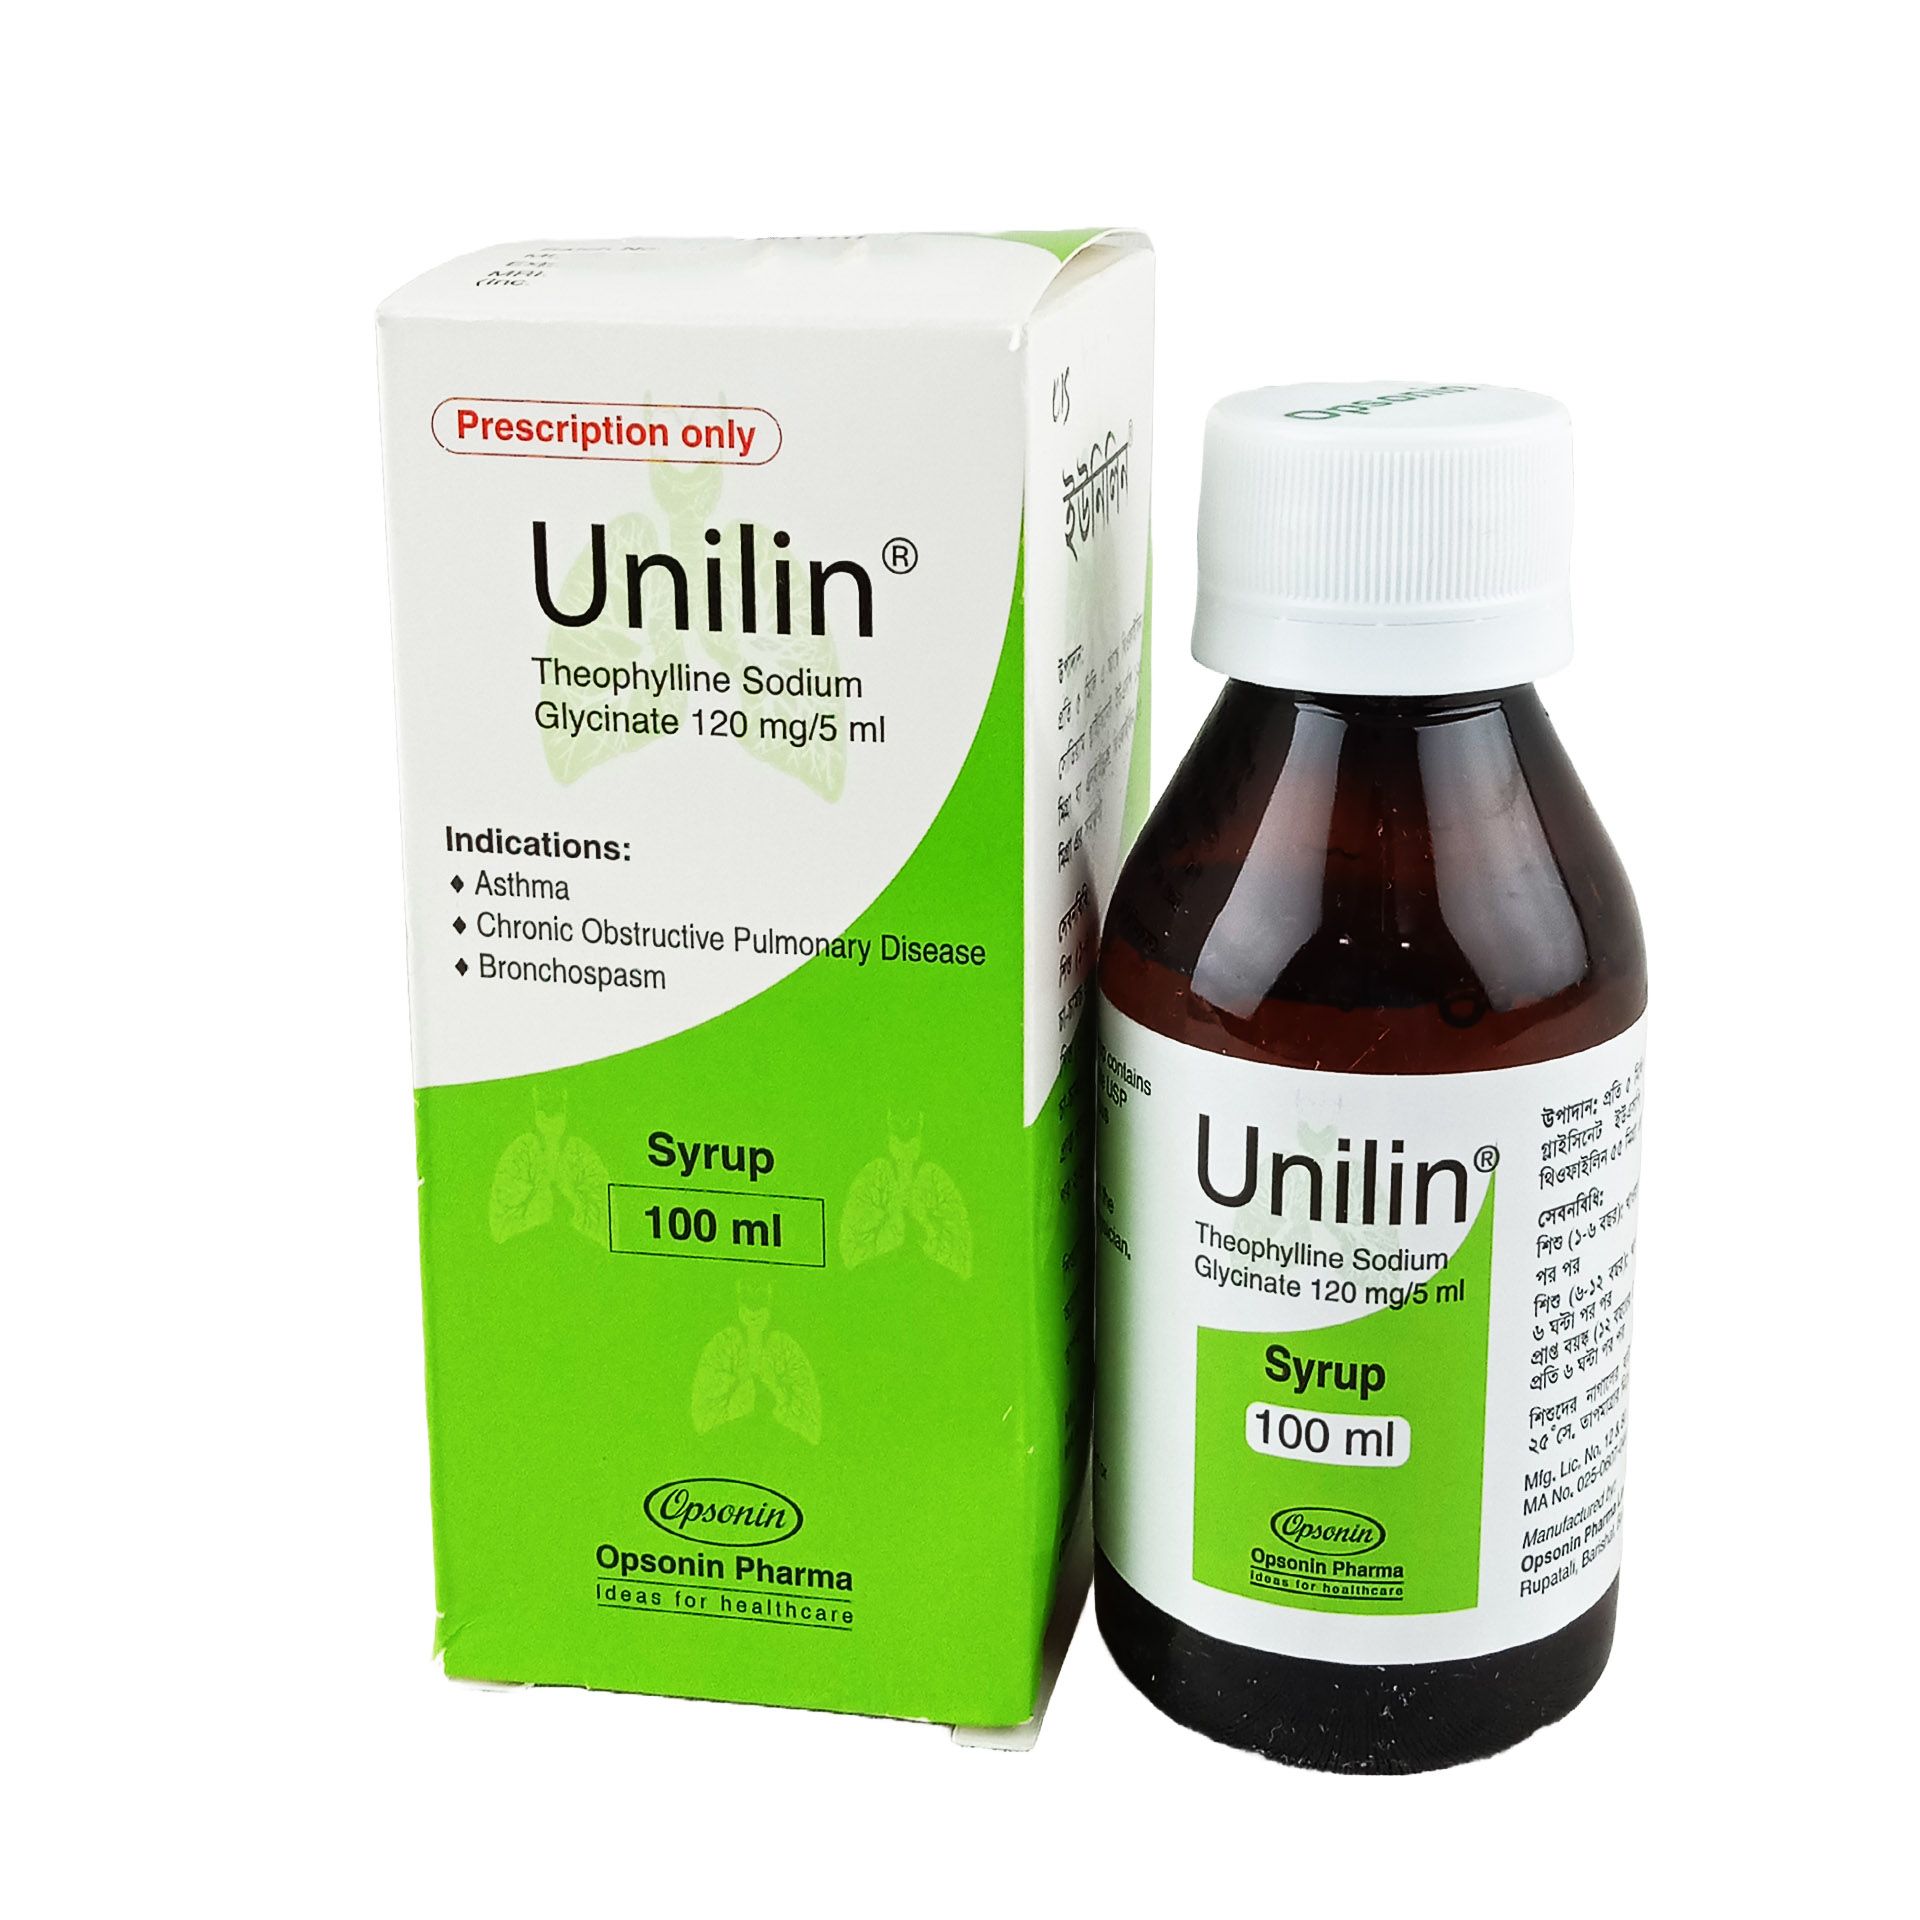 Unilin 120mg/5ml Syrup